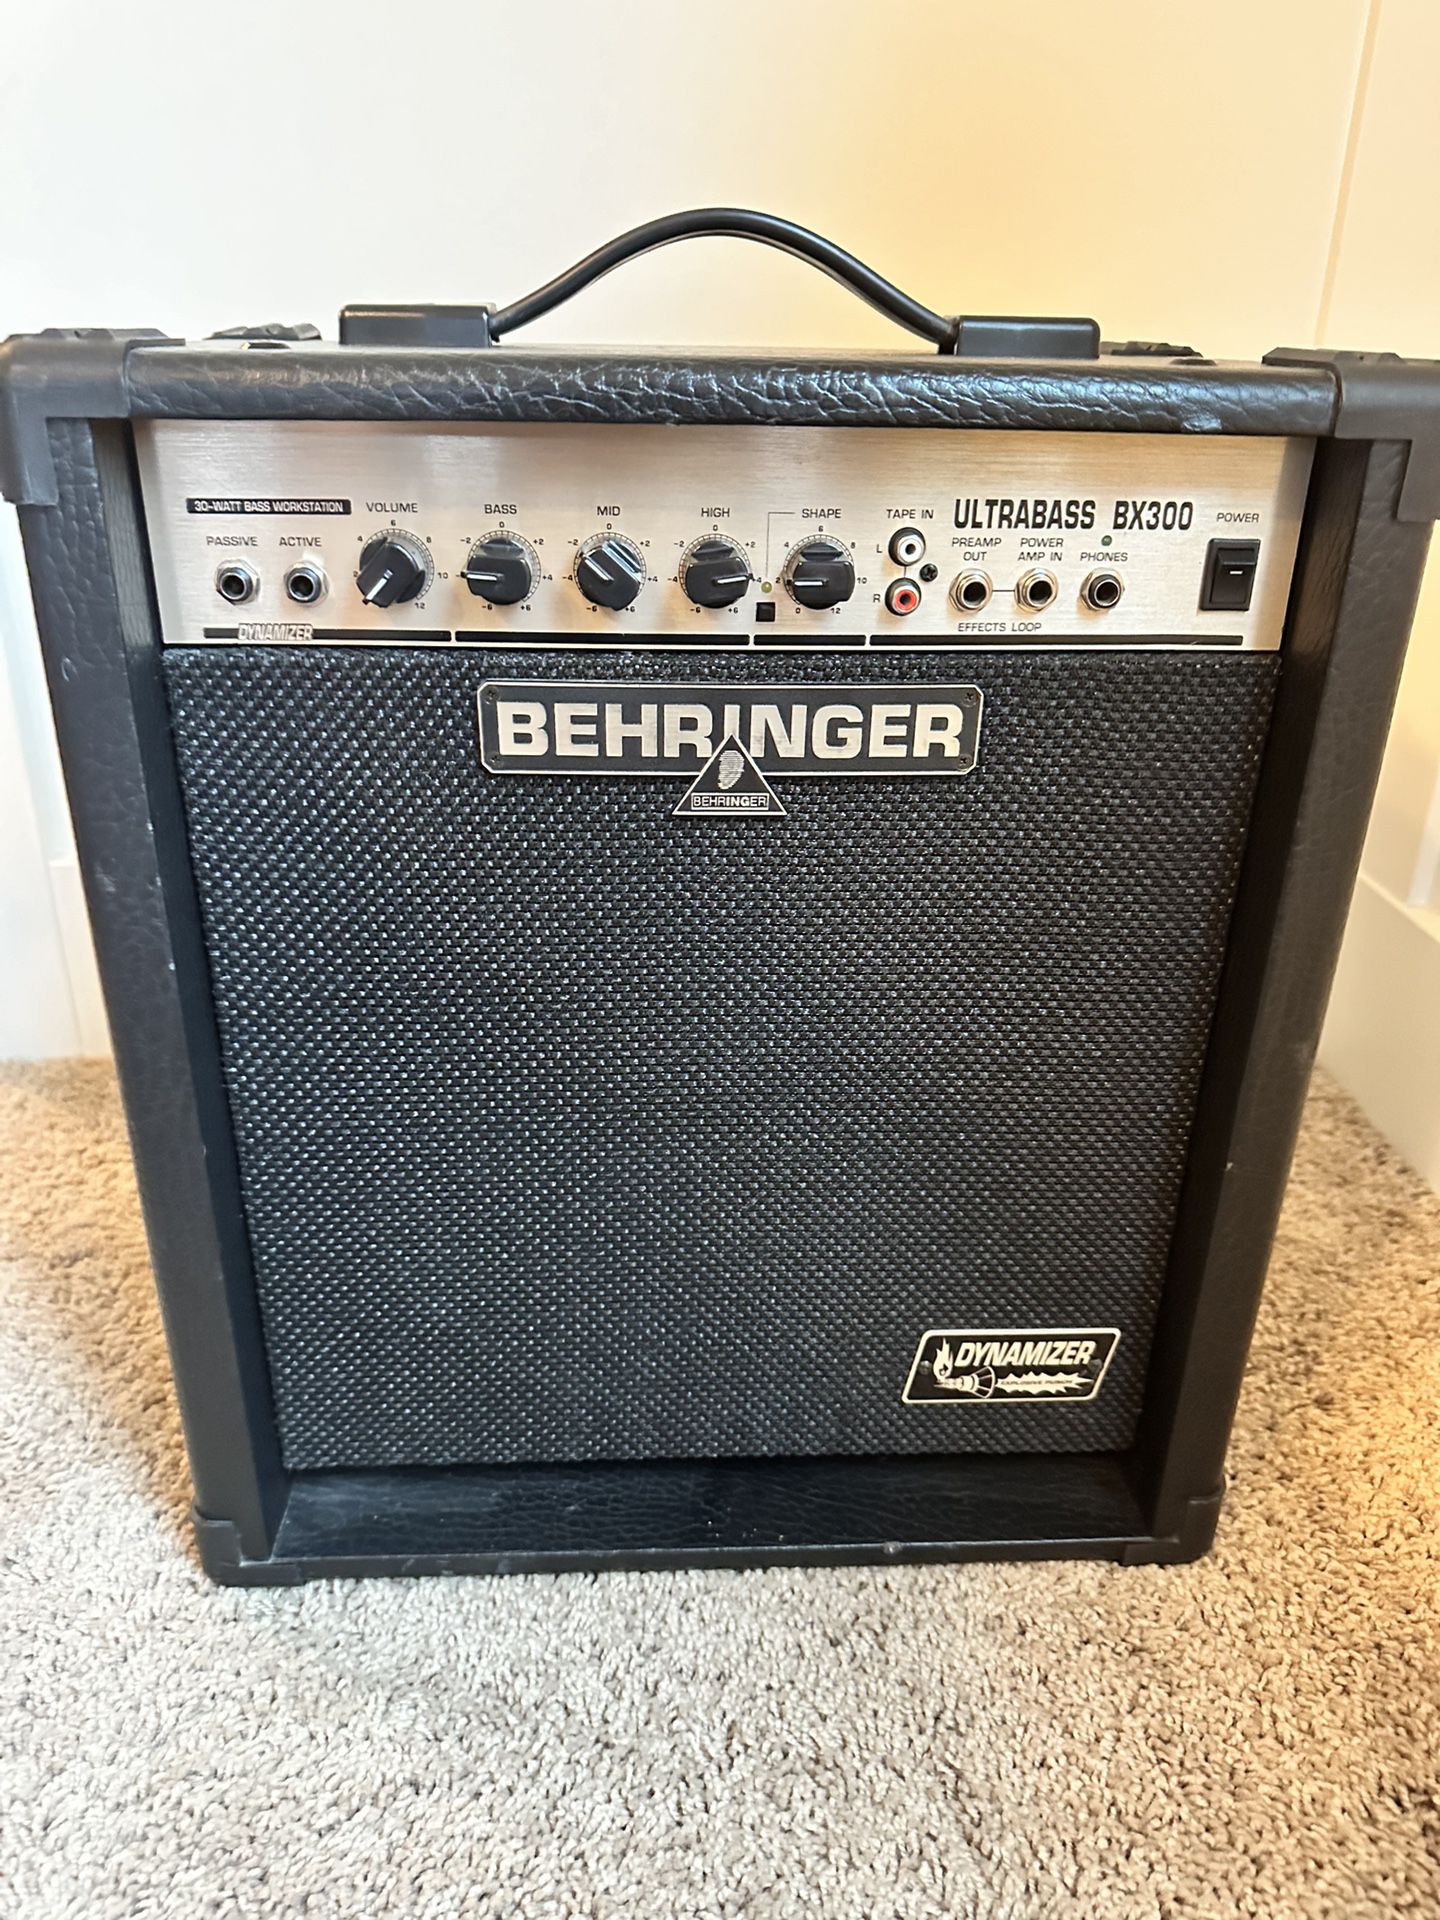 Behringer BX300 Ultrabass 30-Watt 1x10" Bass Combo